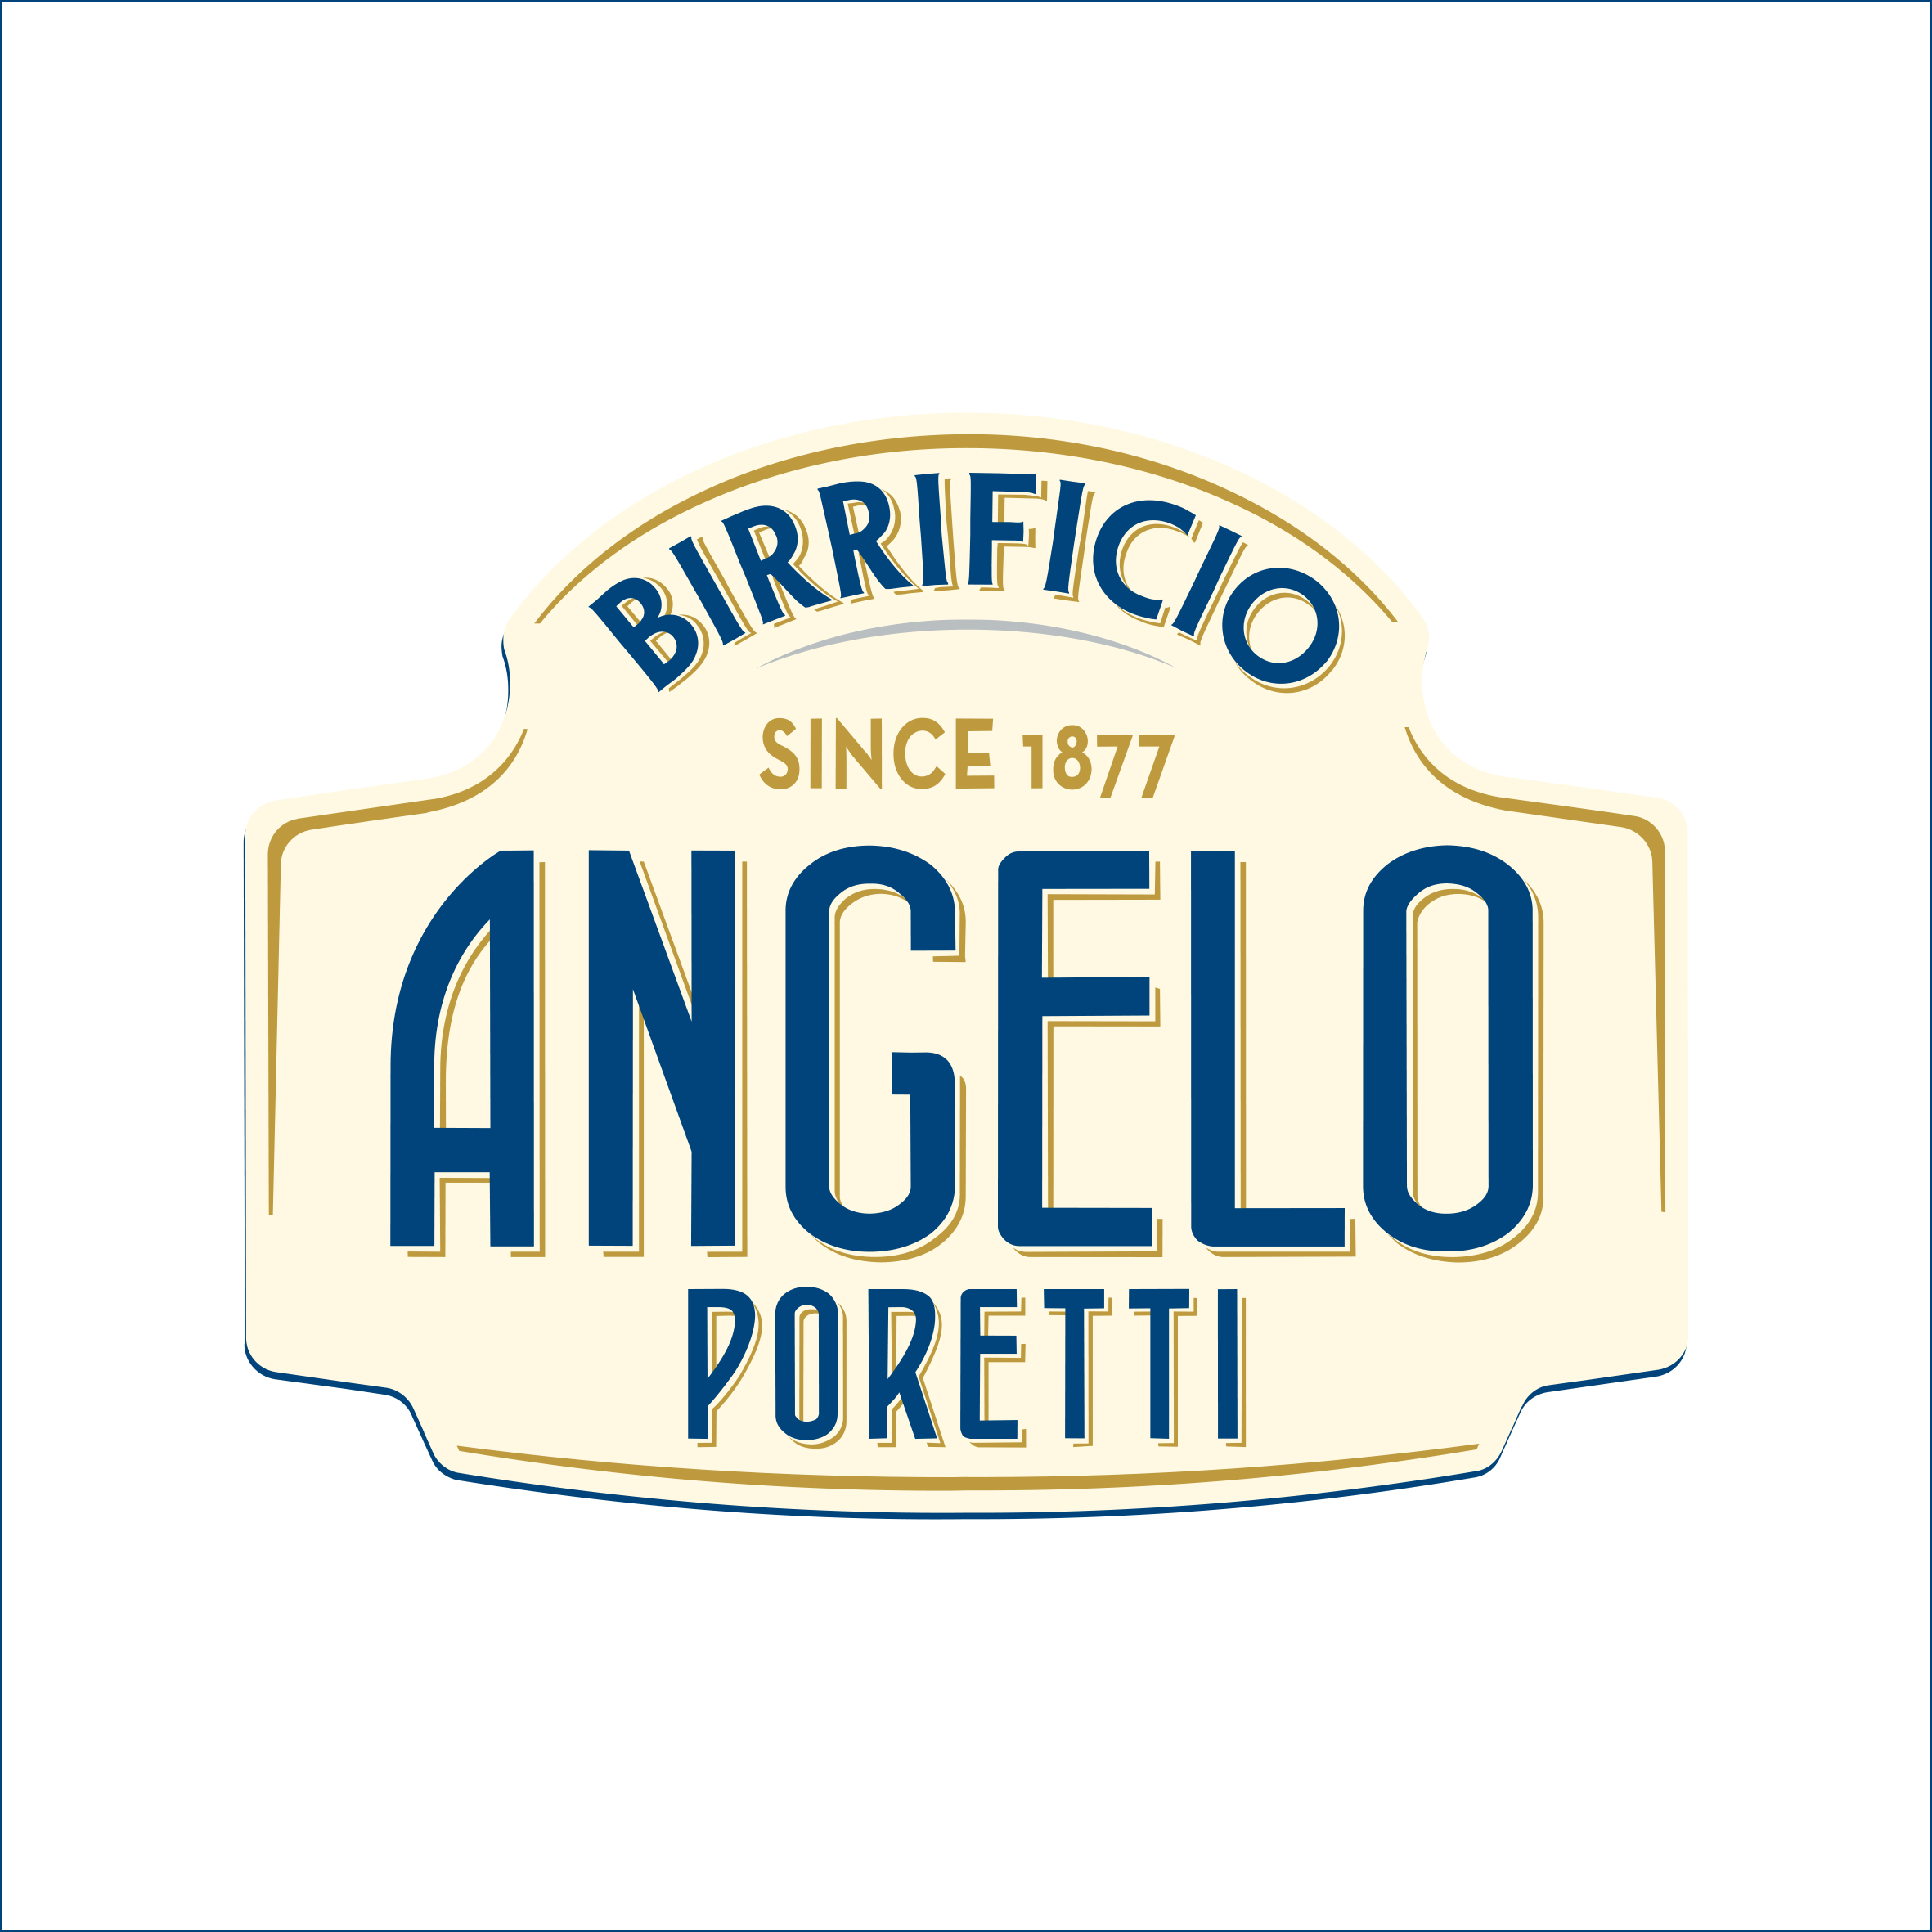 Angelo Poretti